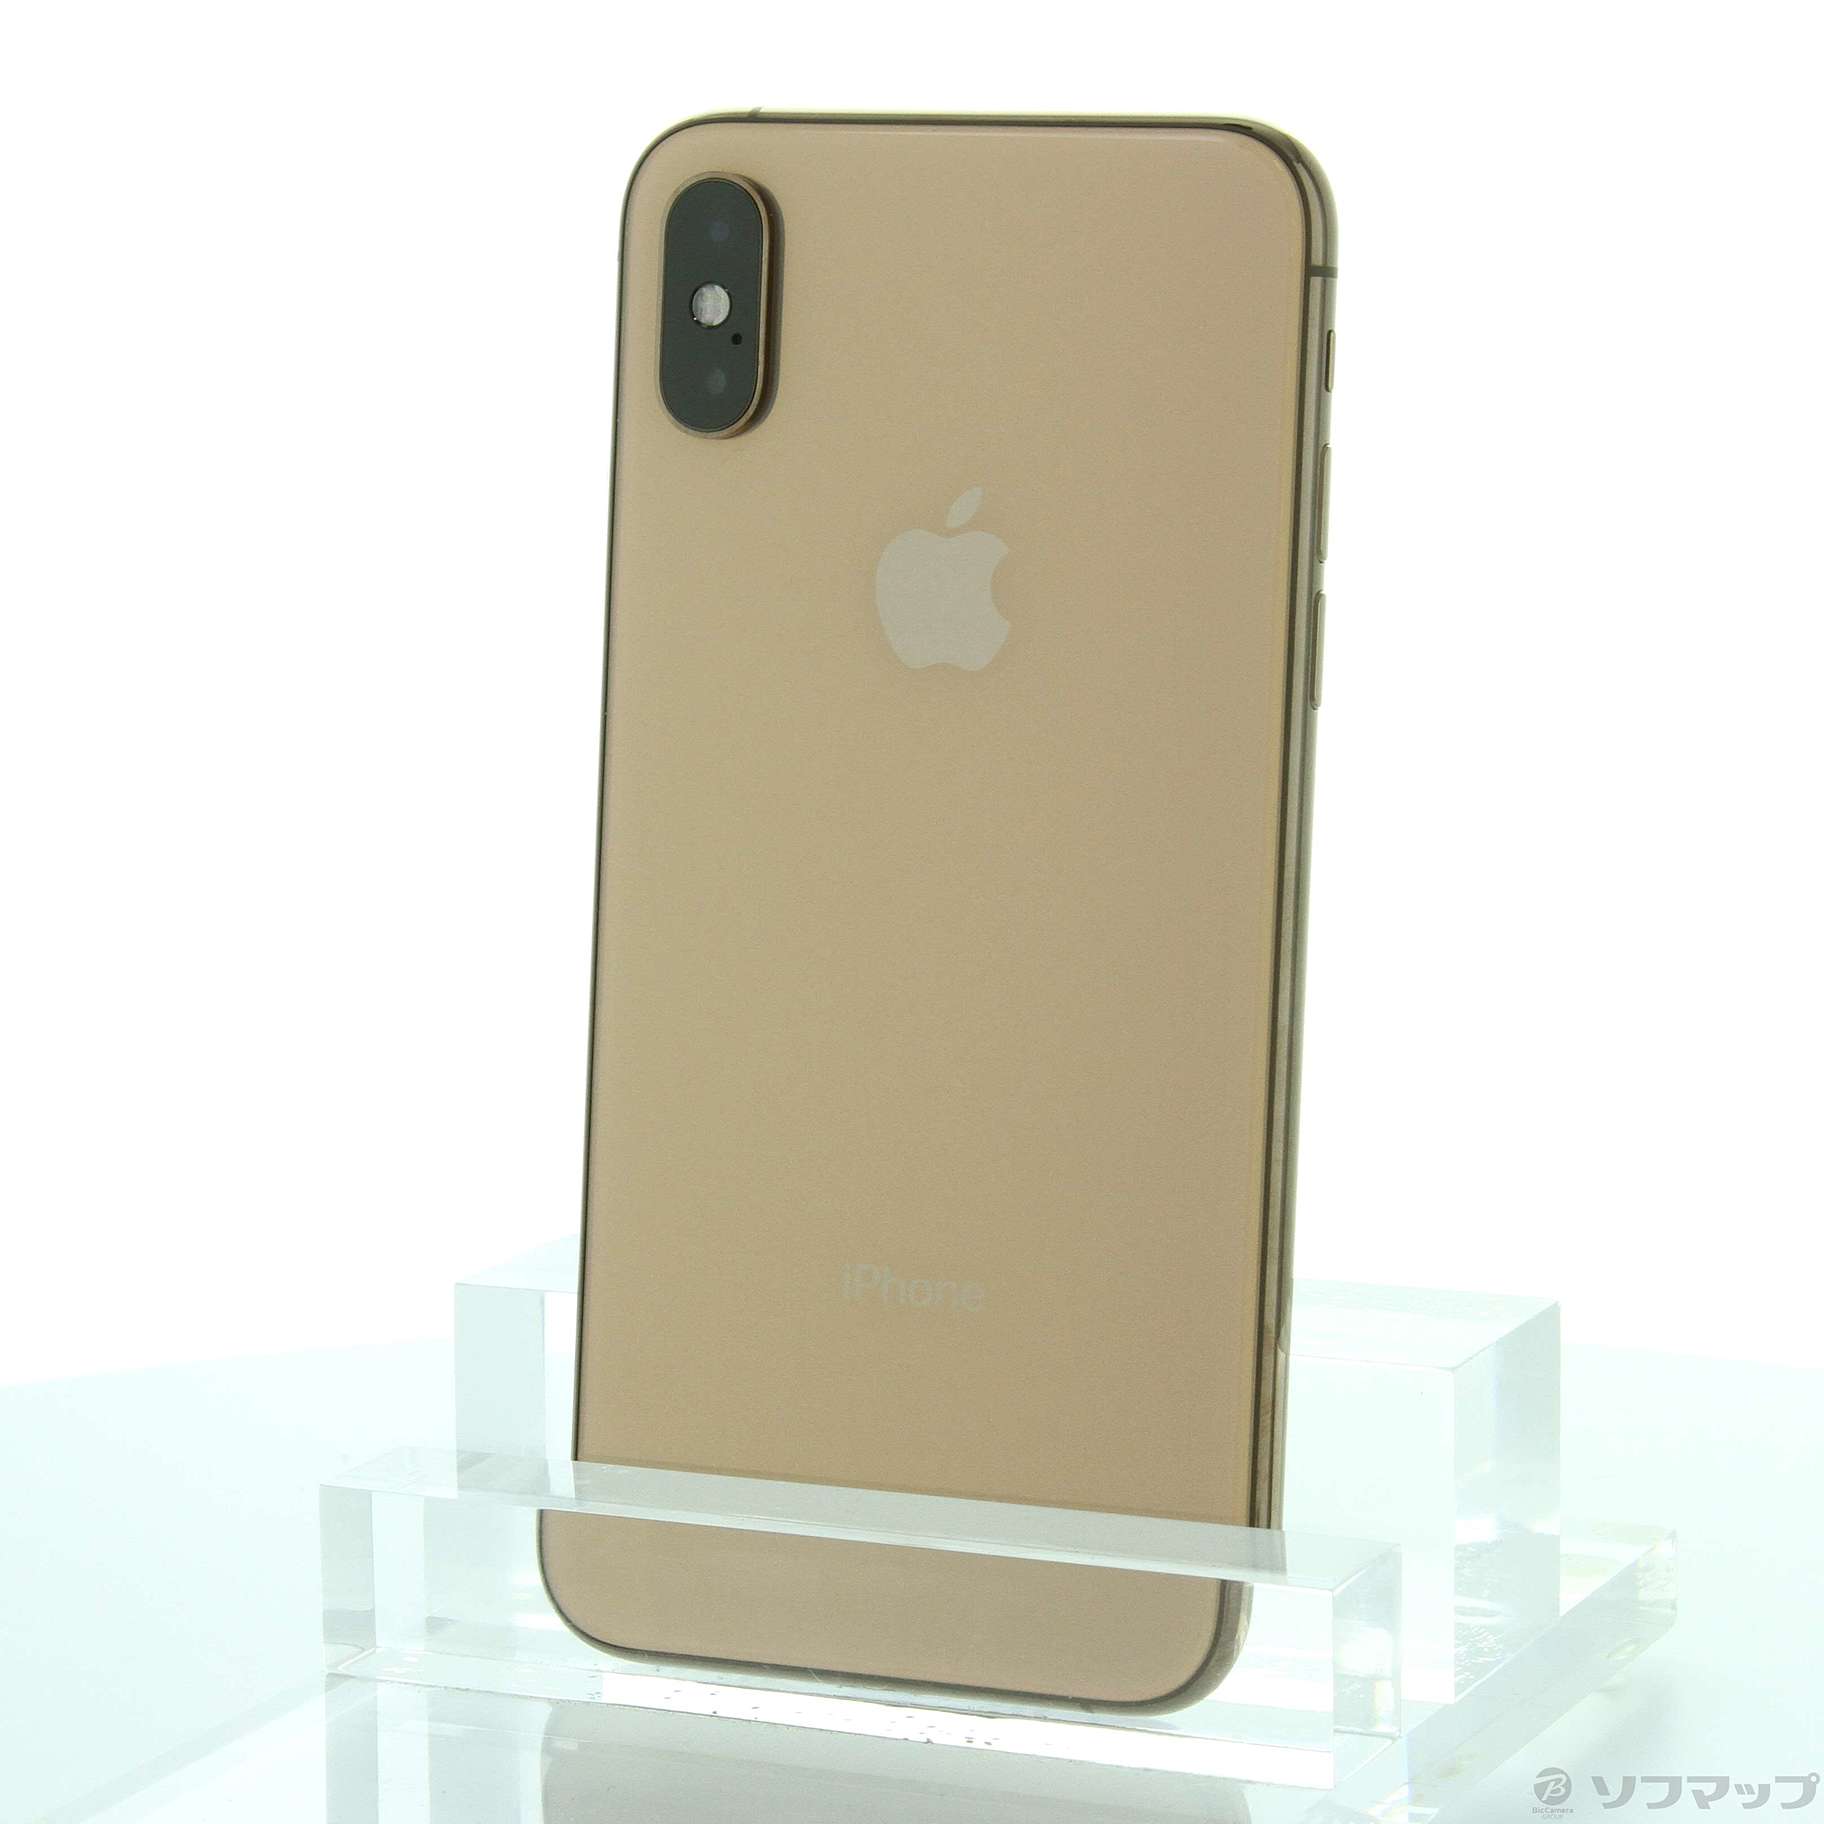 スマートフォン/携帯電話iPhoneXS 256GB ゴールド - スマートフォン本体